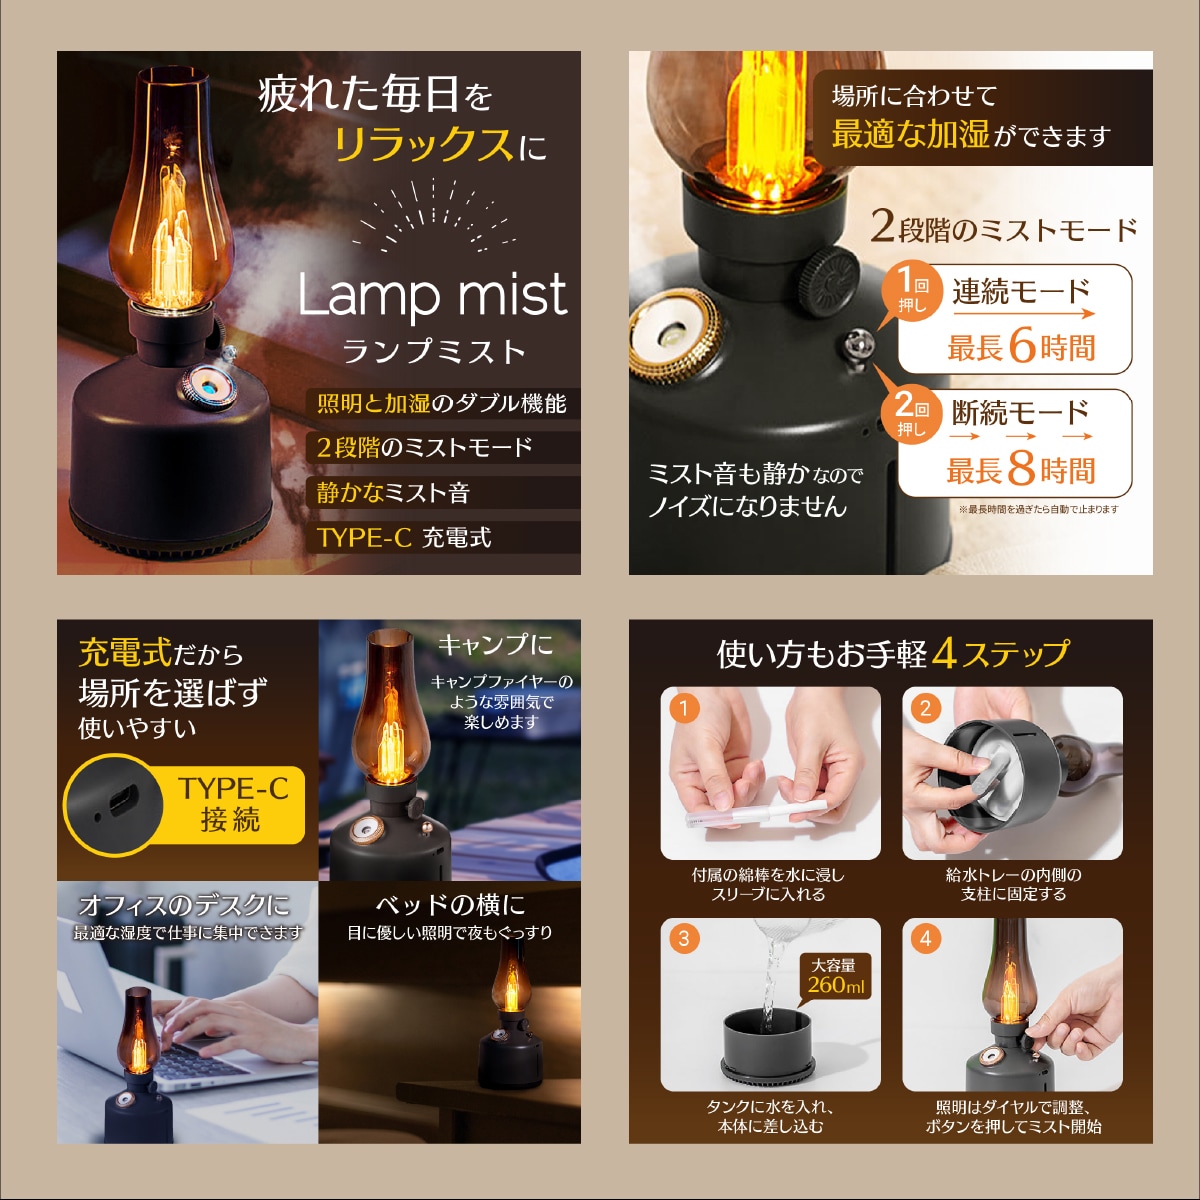 【サンプル】ランプ型加湿器の商品画像